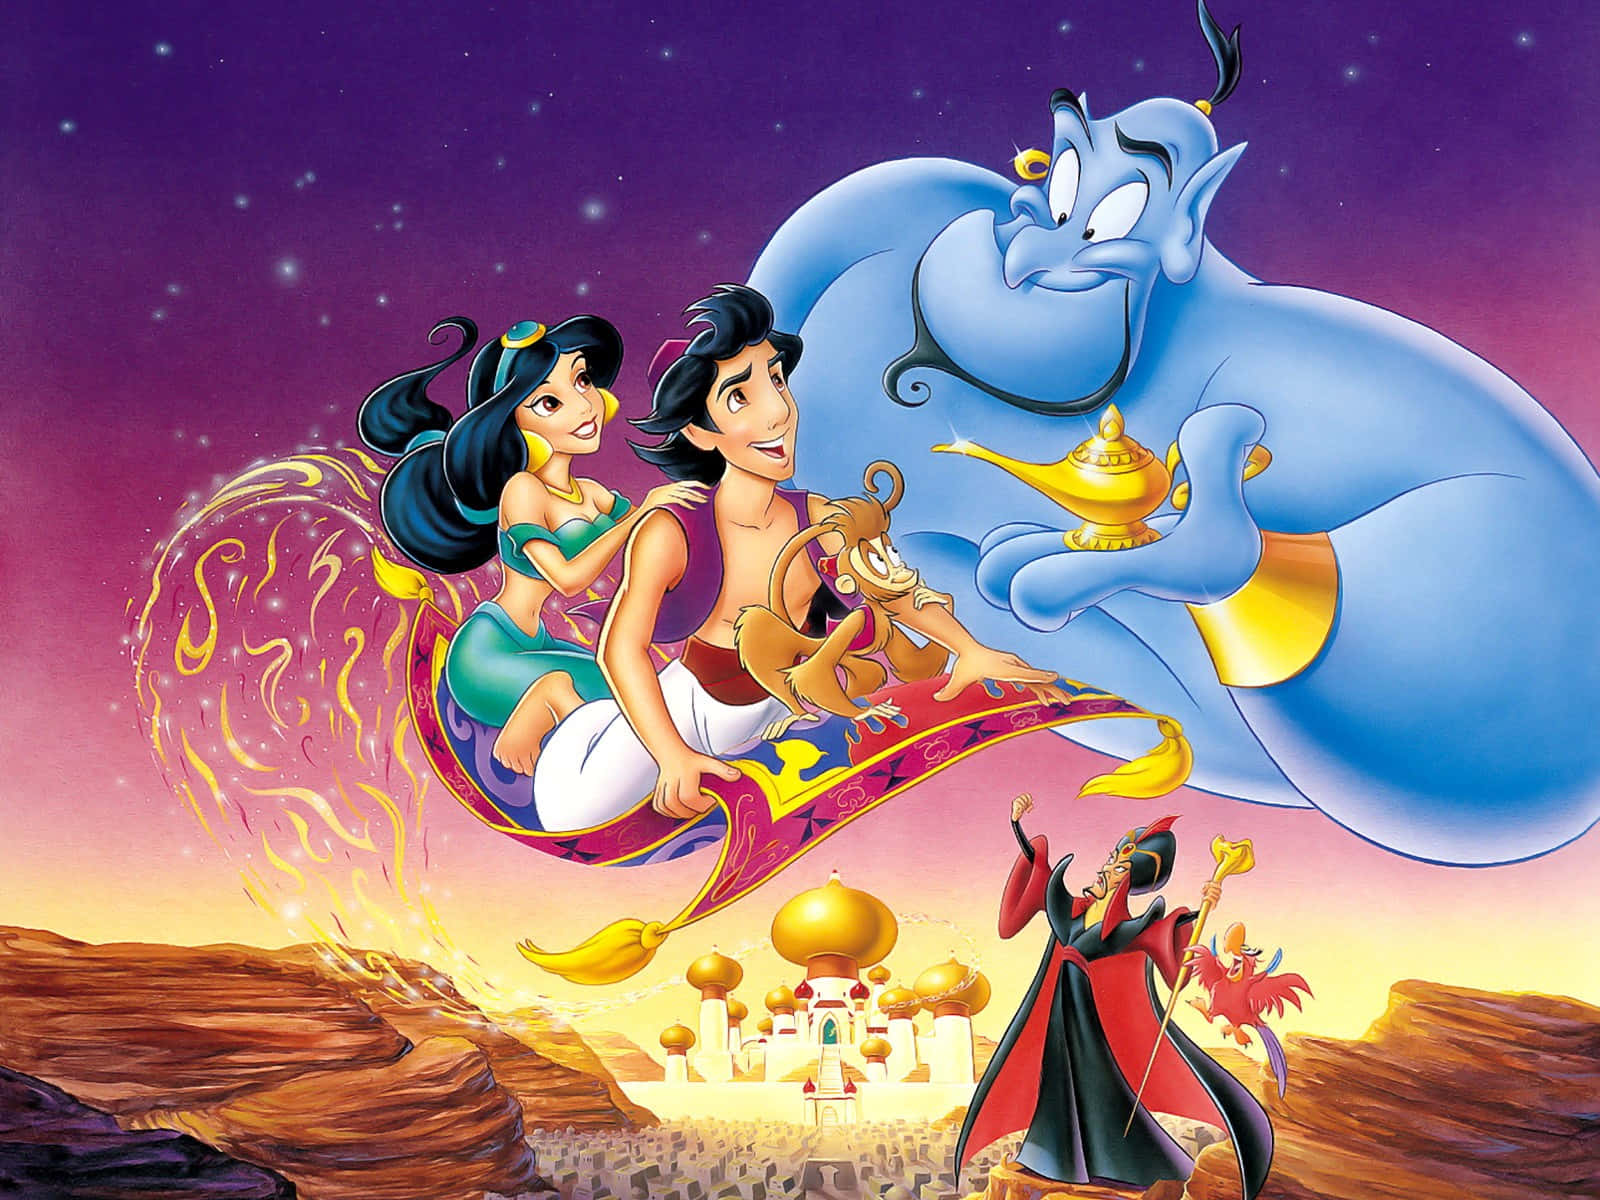 Aladdin,gatusopan, Står I Begrepp Att Påbörja Ett Magiskt Äventyr.